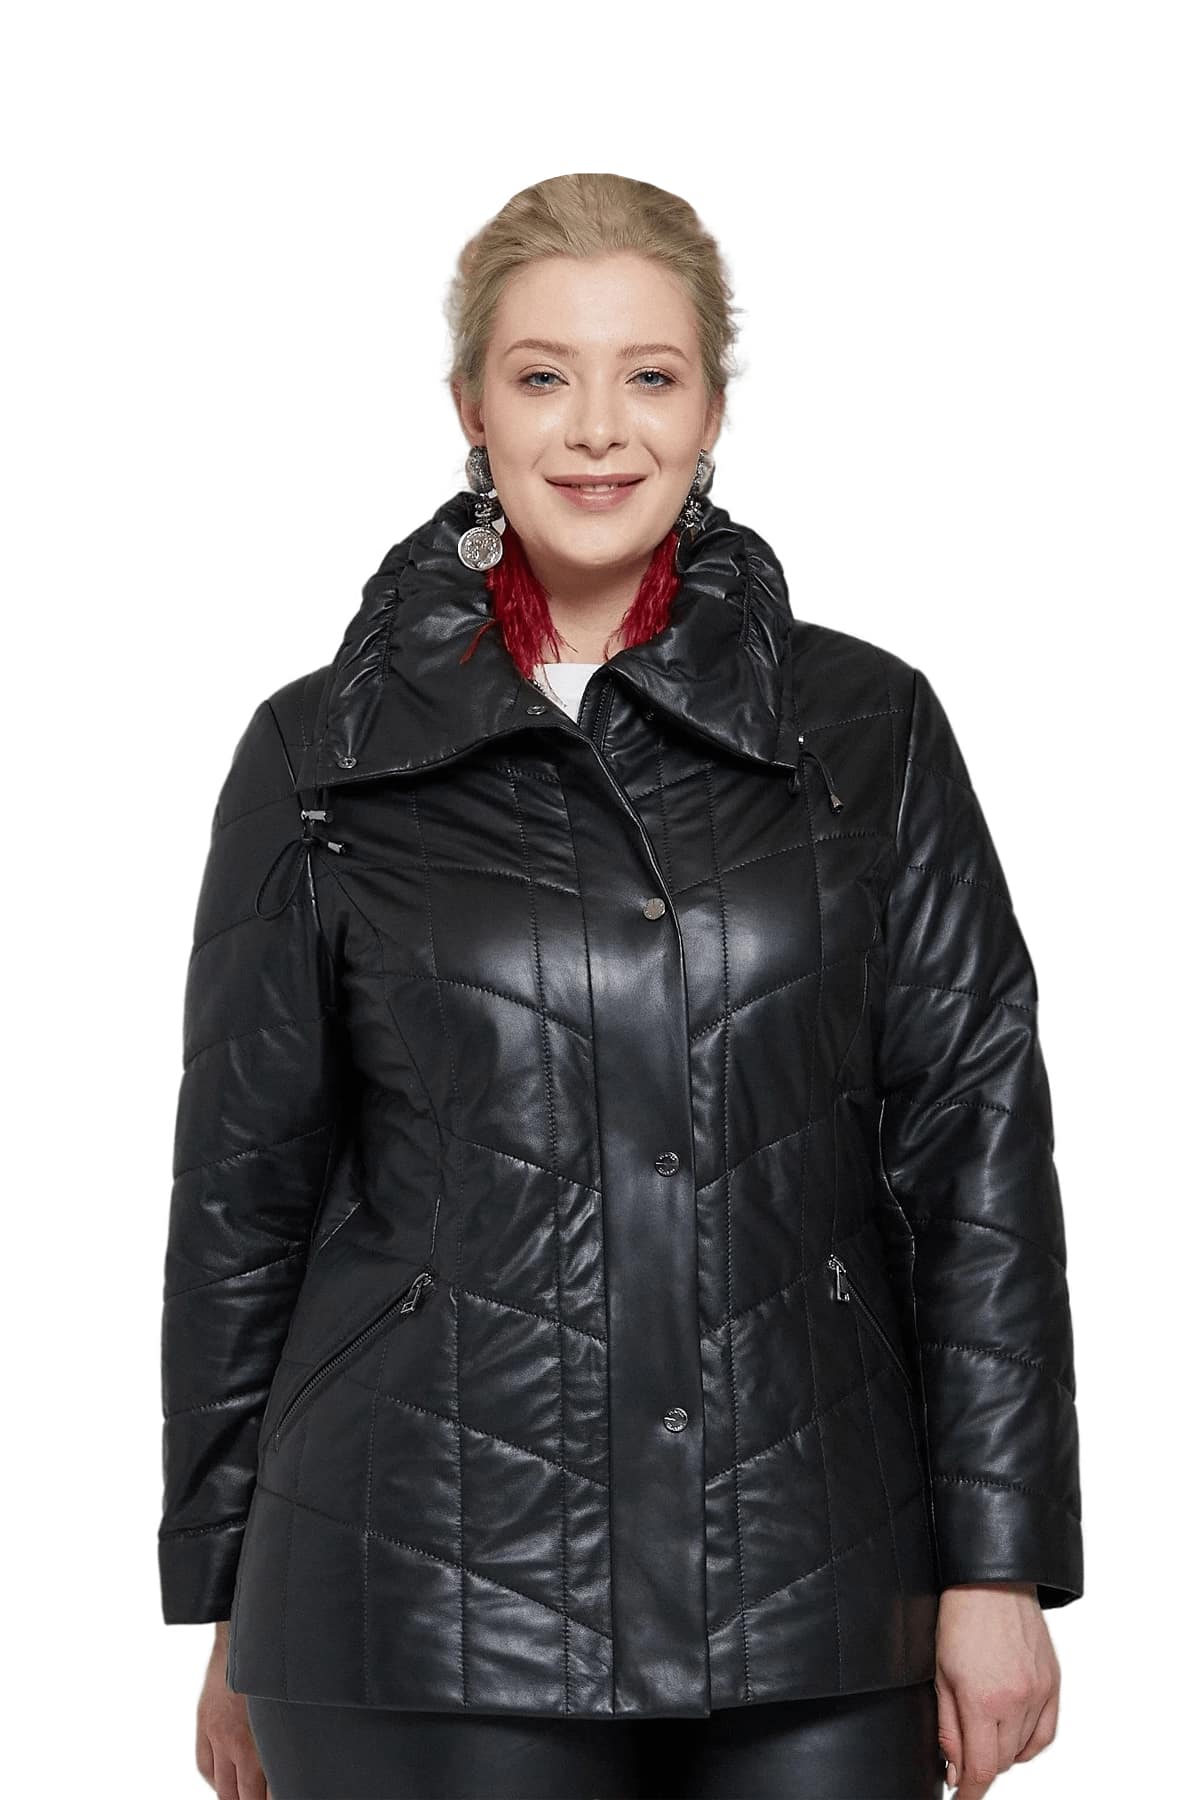 Women's 100 % Real Black Leather Stylish Jacket